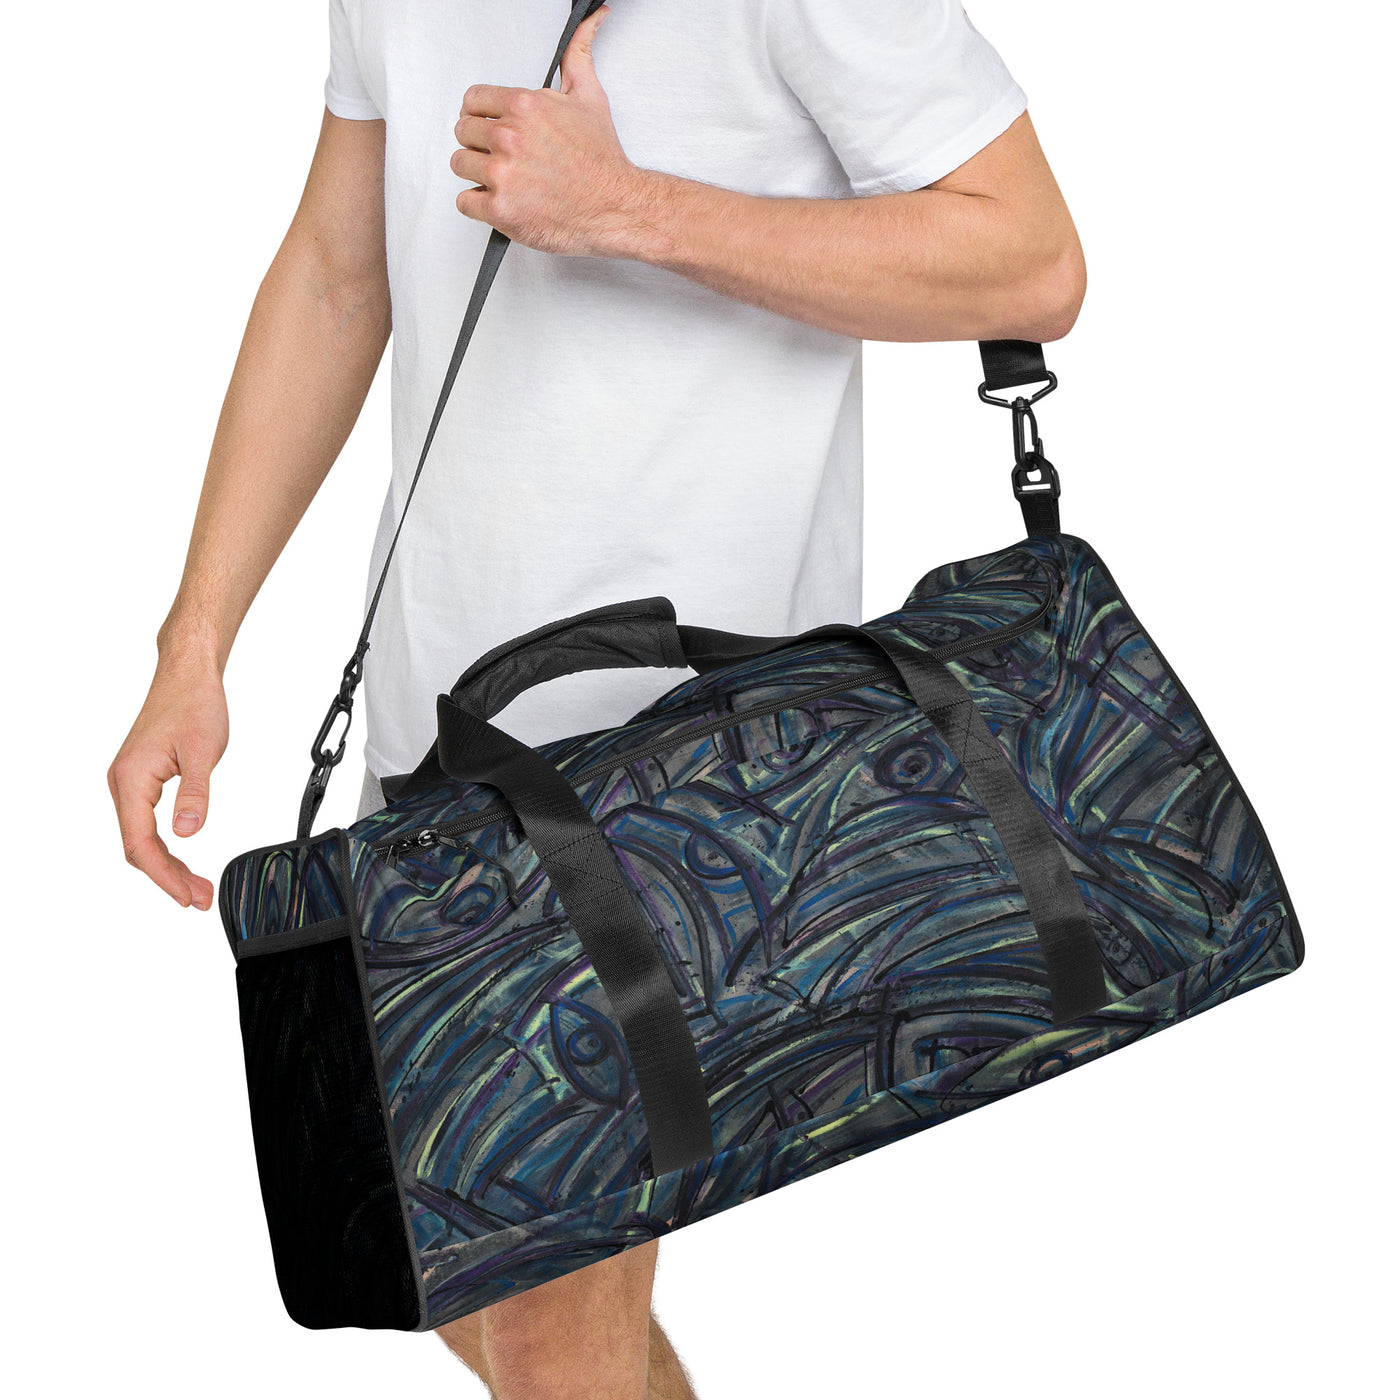 Insight Art Duffle bag